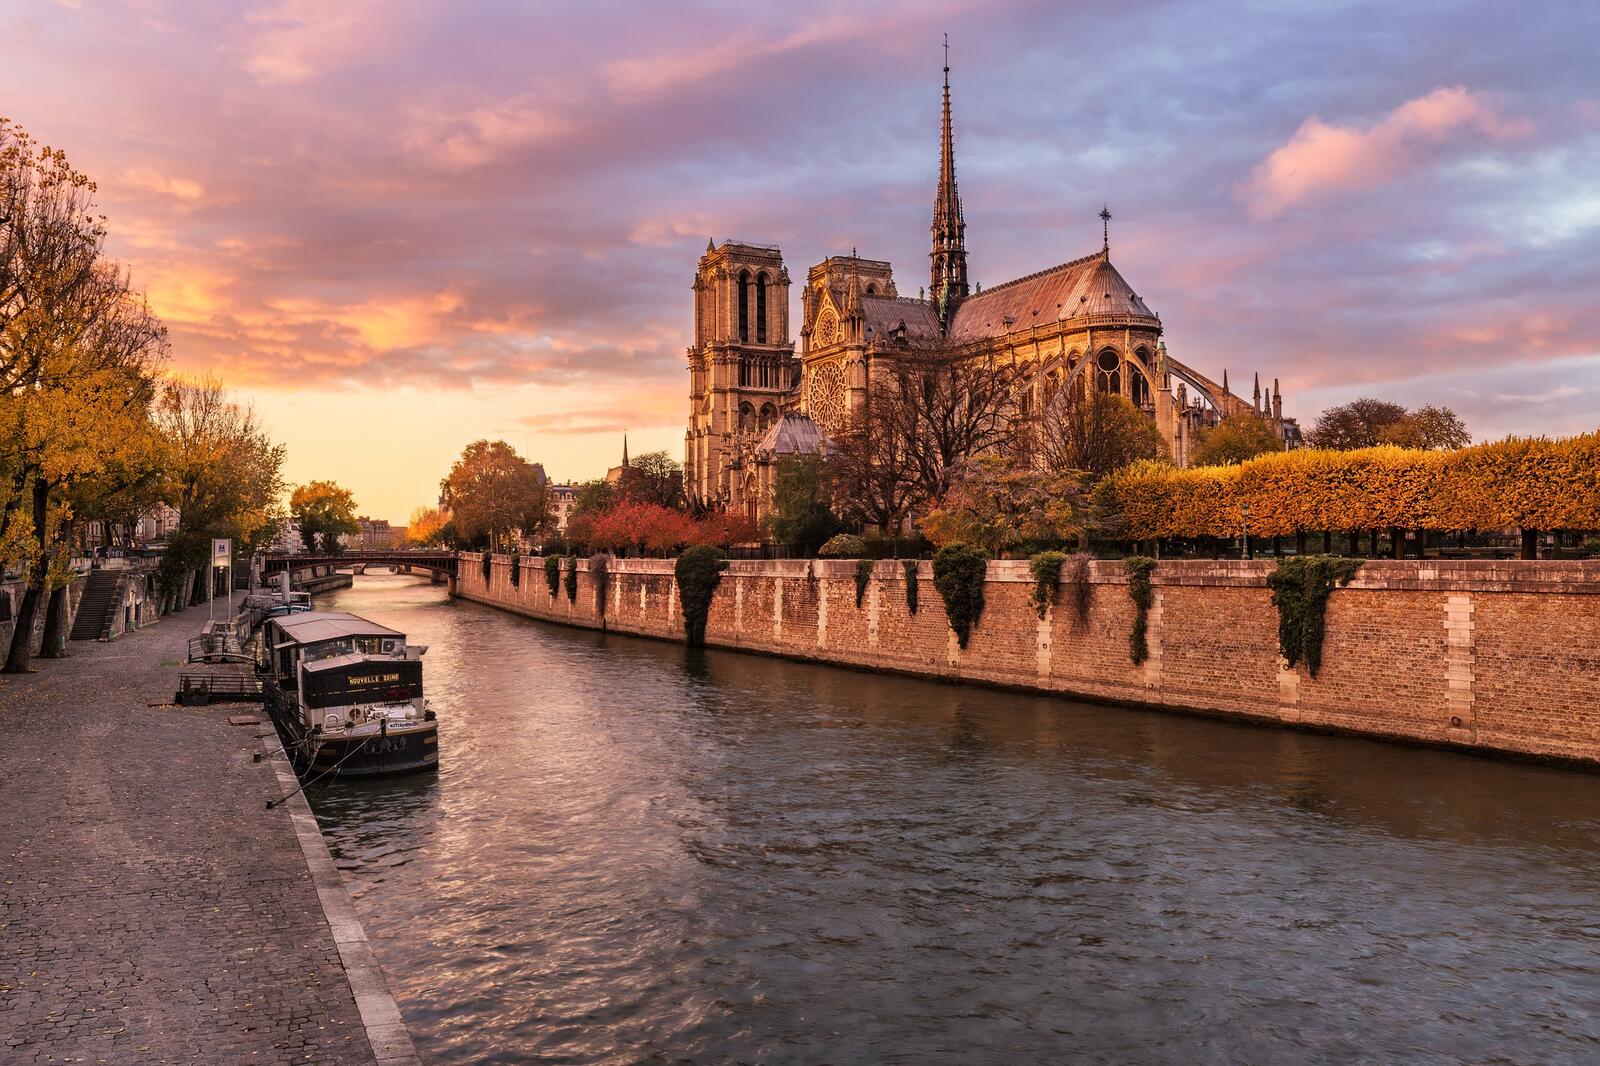 免费照片下载 Paris, Notre Dame 图片